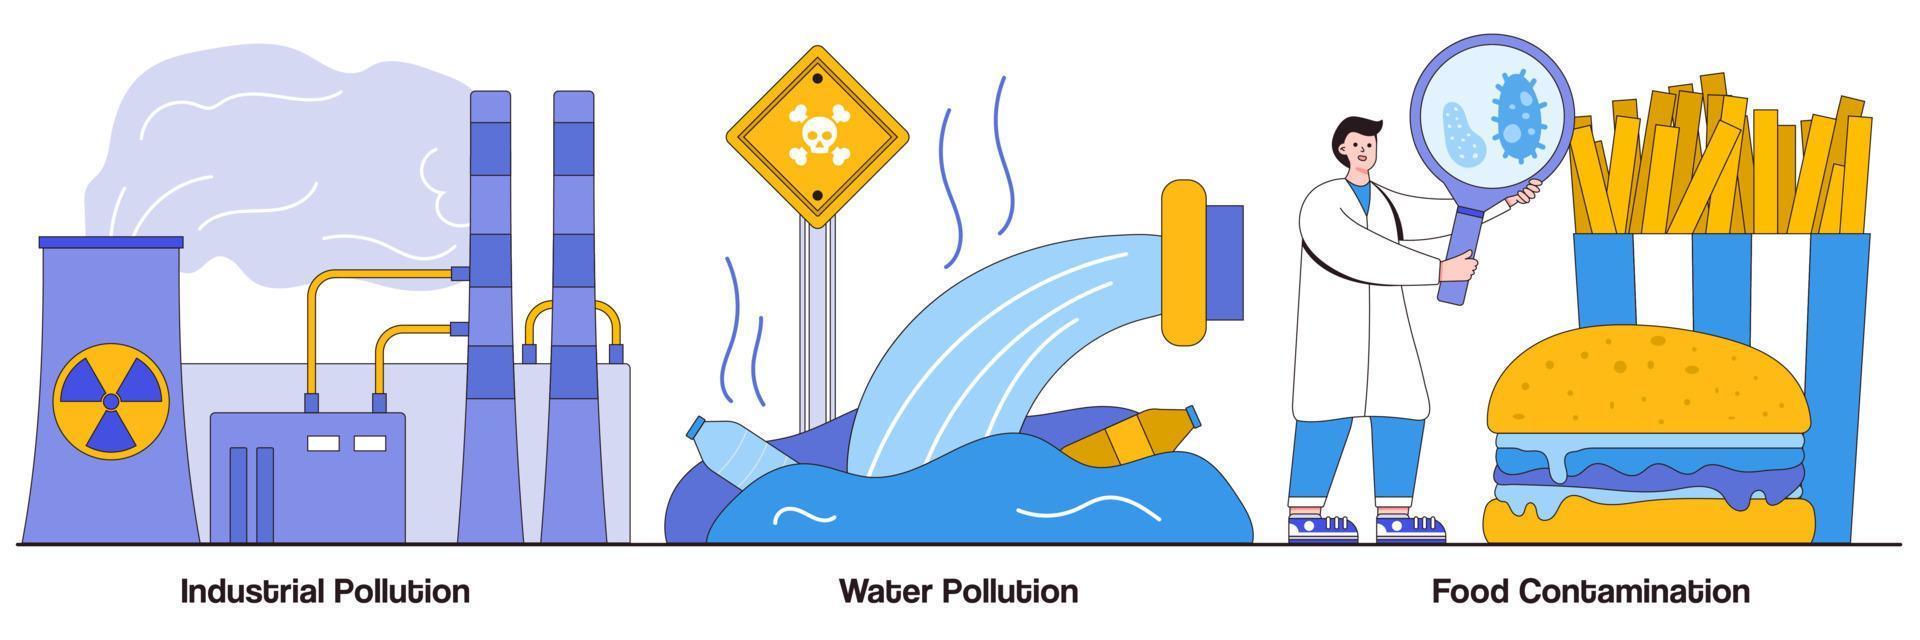 industriell, vattenförgiftande föroreningar och livsmedelsföroreningar illustrerad förpackning vektor